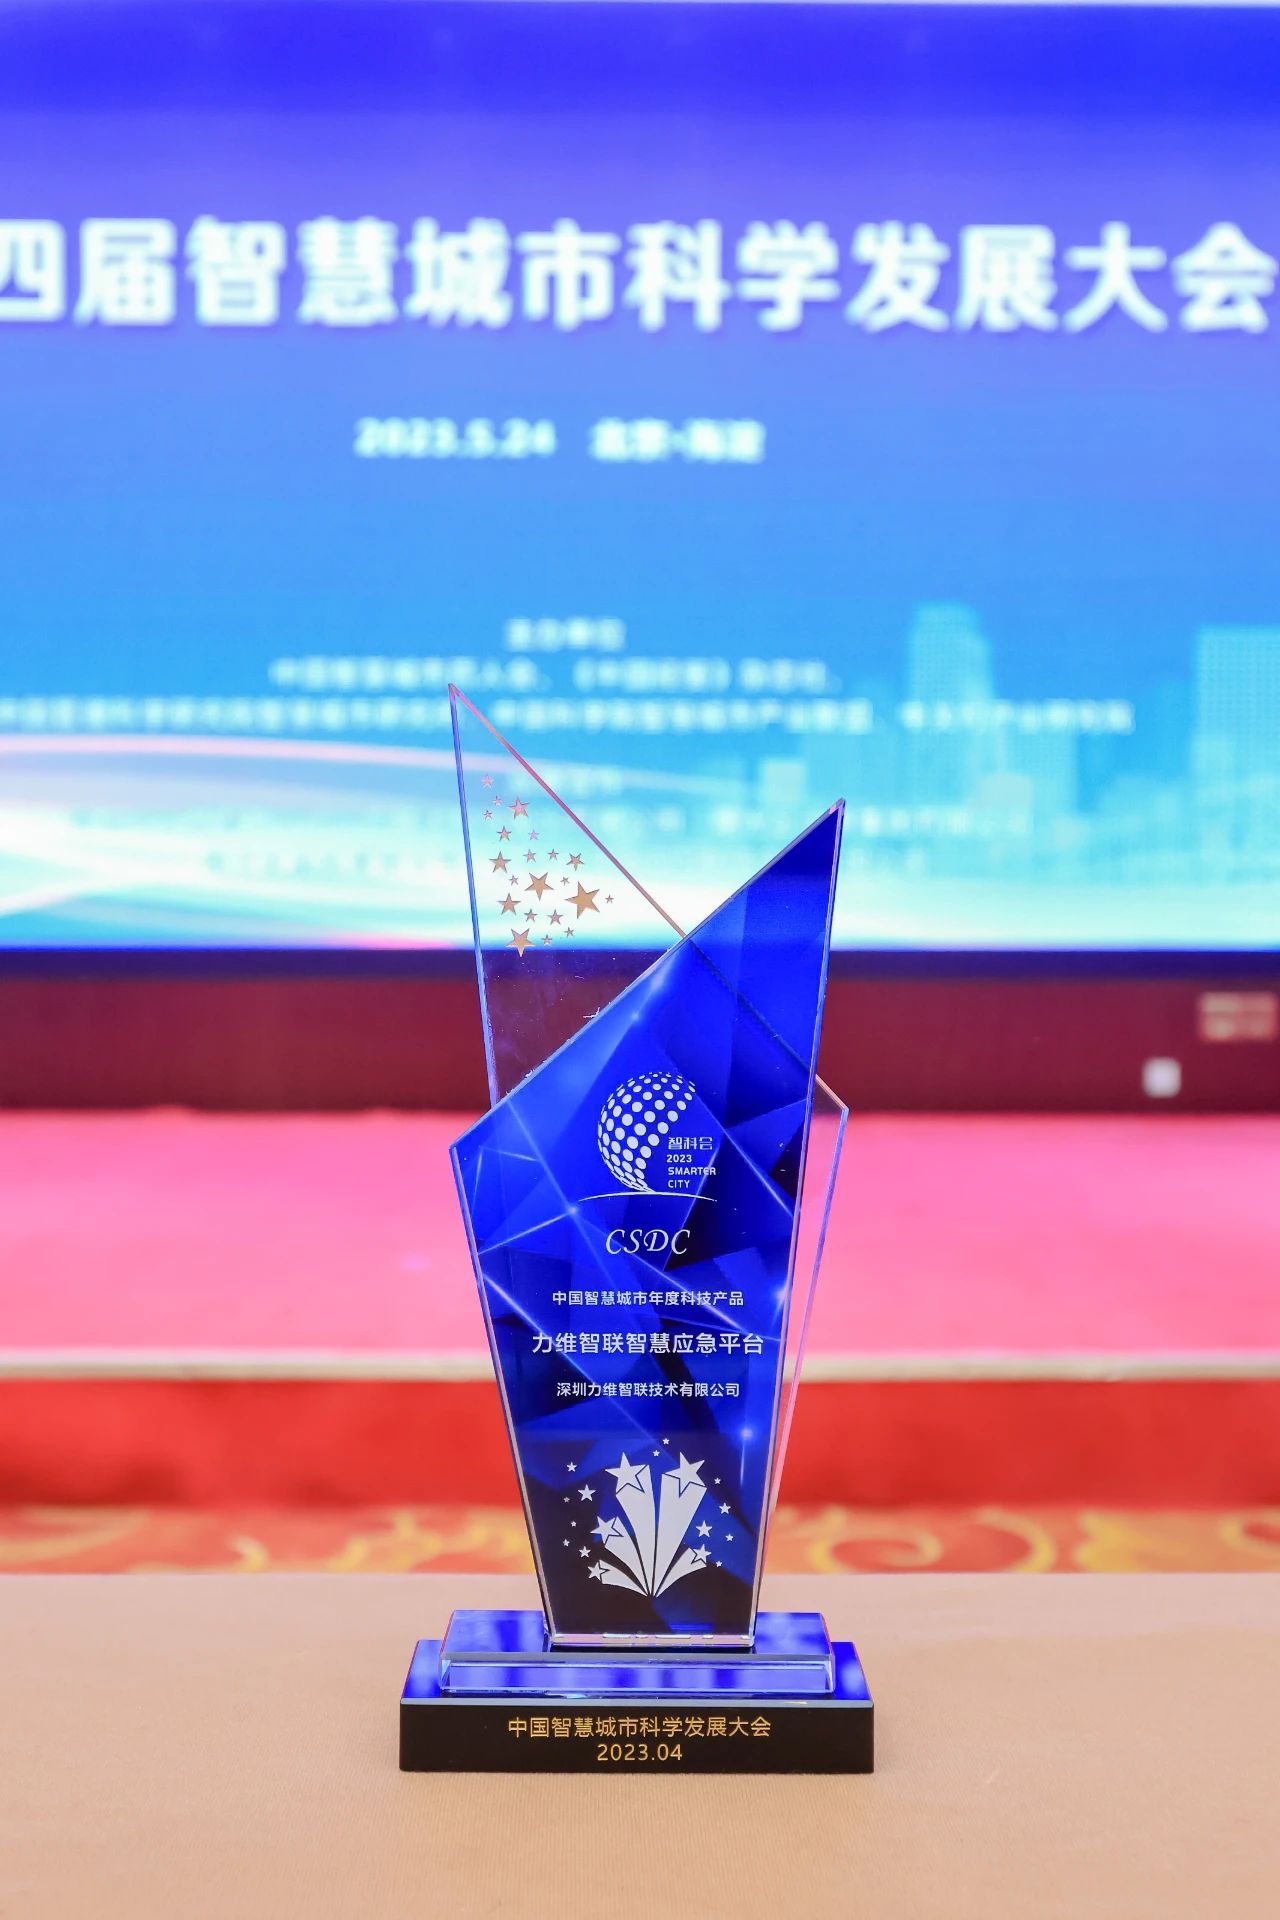 业界荣誉 | 9170官方金沙入口会员登录智慧应急系统荣膺“中国智慧城市年度科技产品”